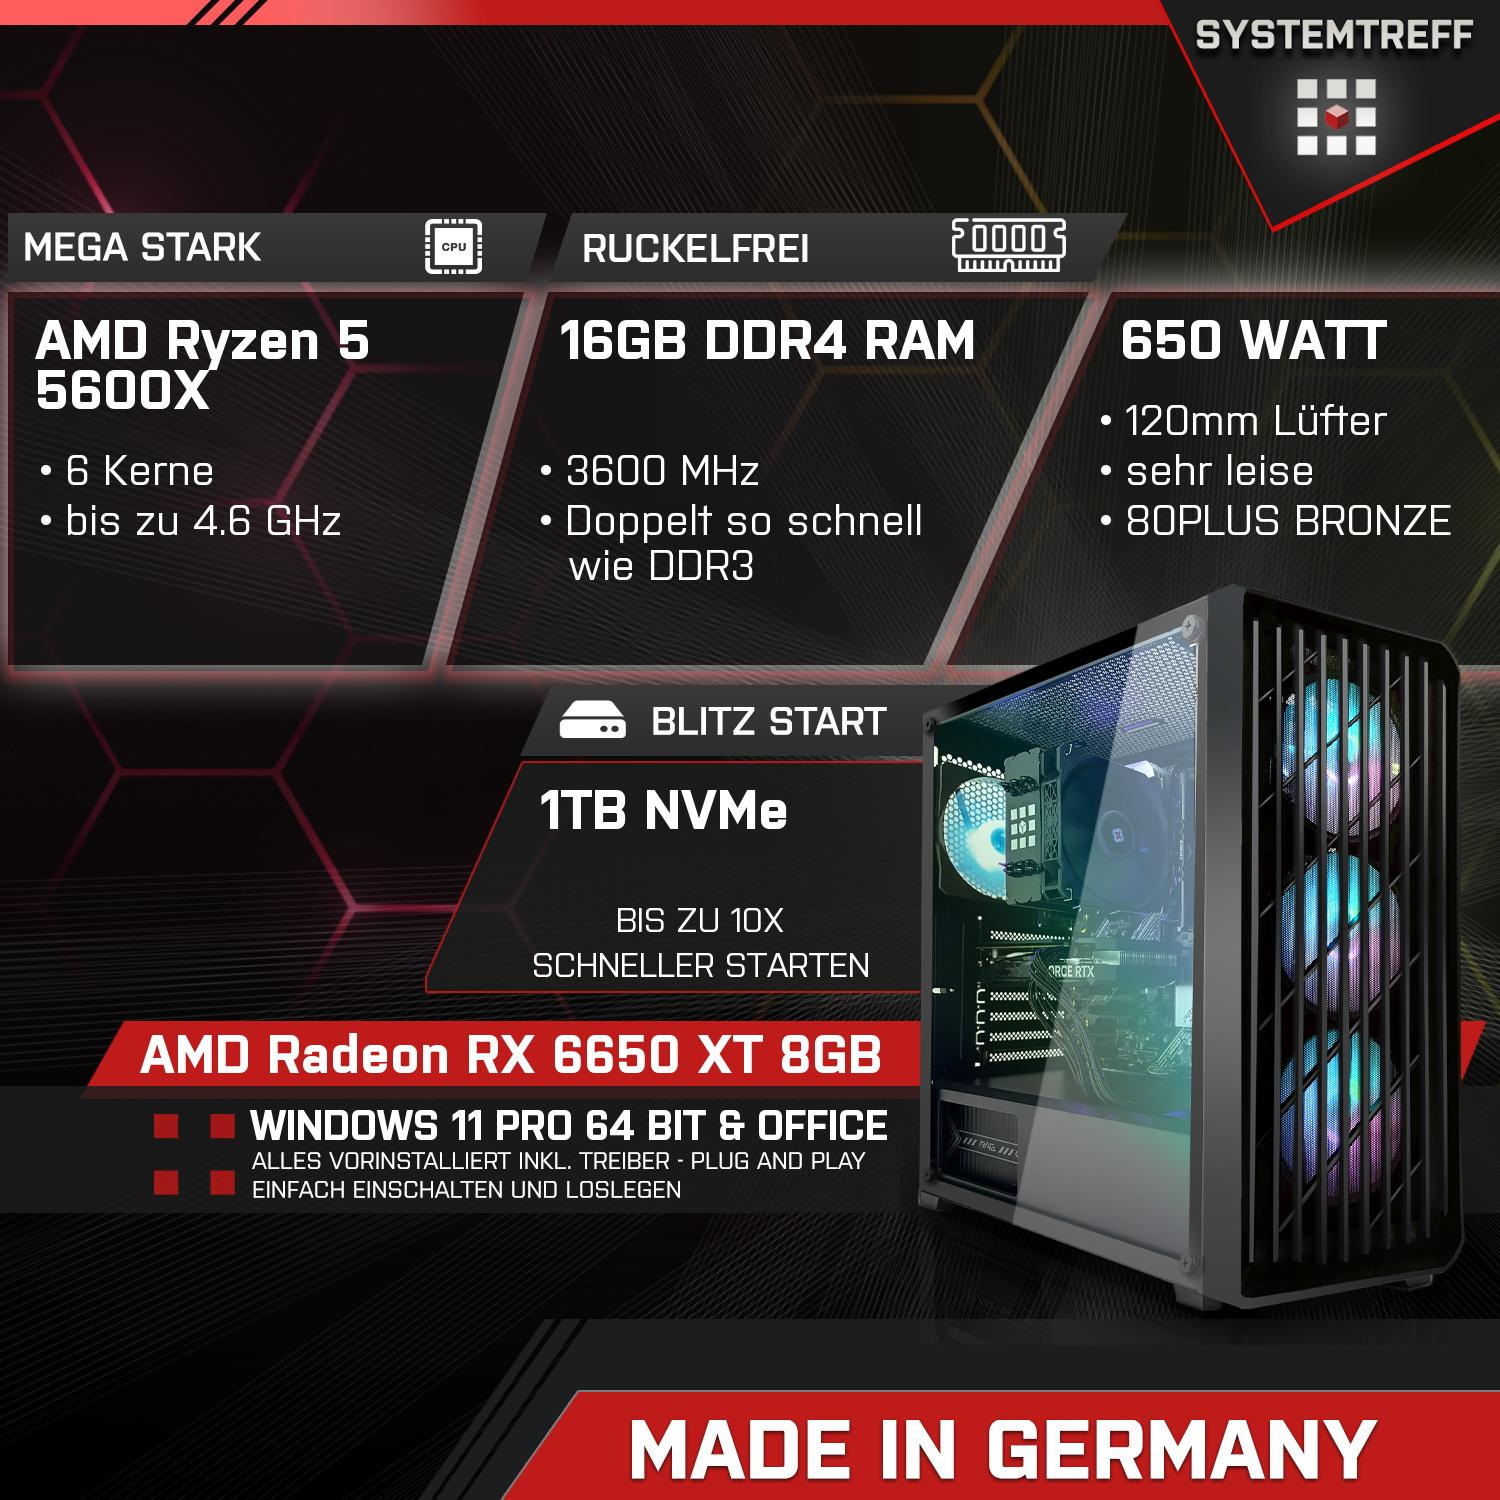 RX GB RAM, 5 8GB GB XT Gaming SYSTEMTREFF GDDR6, 8 PC GB AMD Radeon Komplett mSSD, Komplett 5600X Prozessor, Ryzen AMD mit 6650 5600X, 1000 16